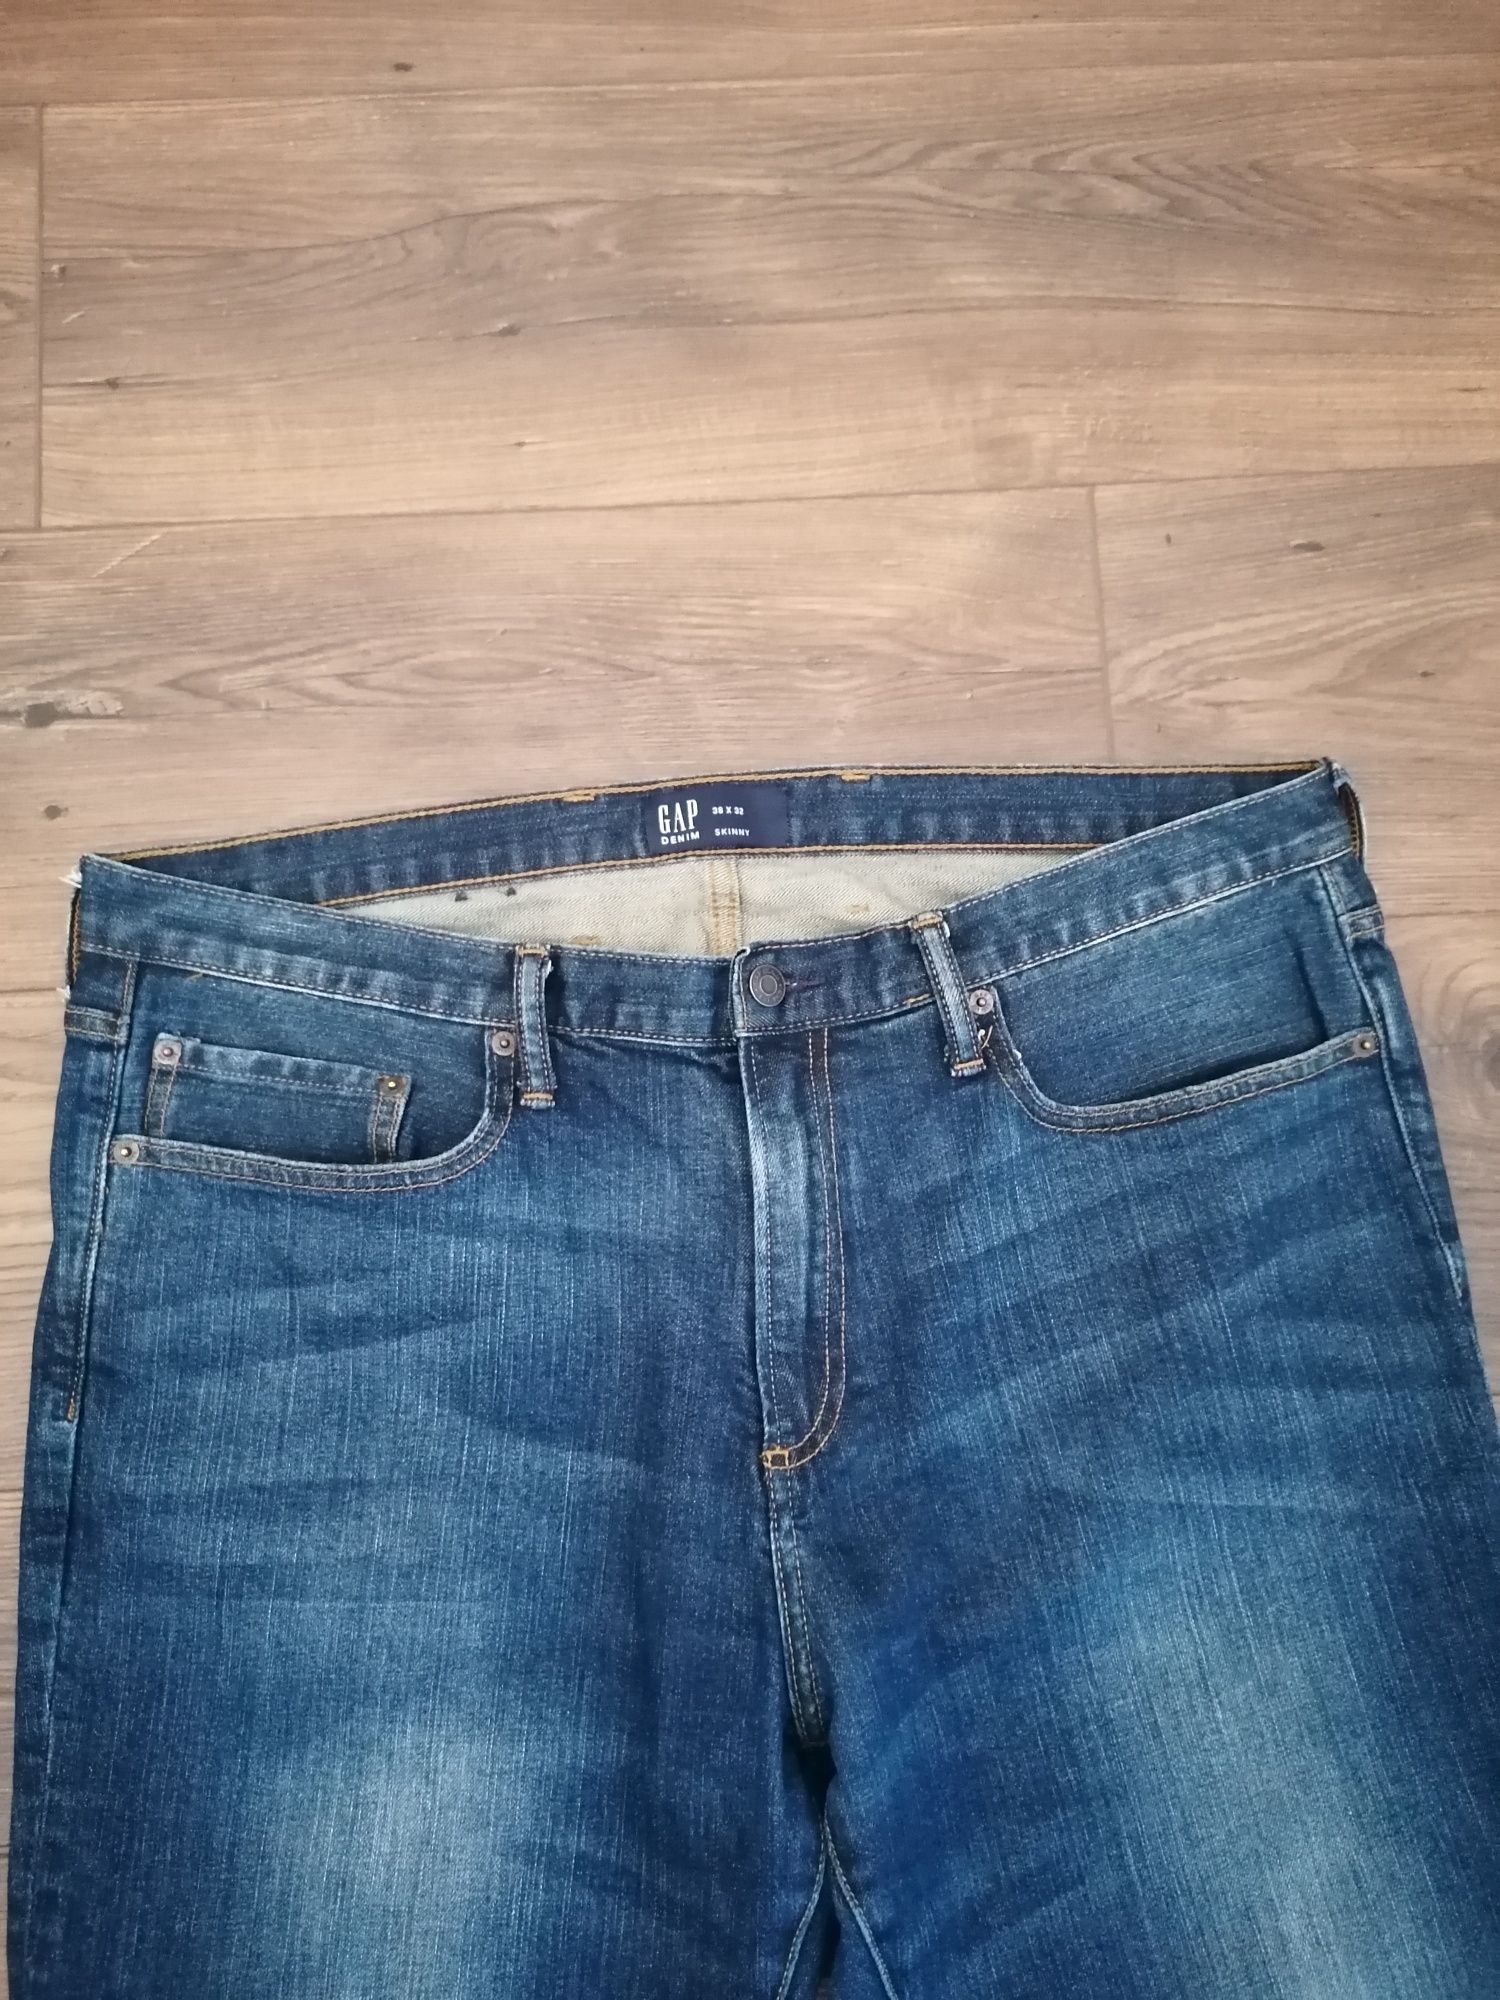 Dżinsy/jeansy męskie Gap duży rozmiar